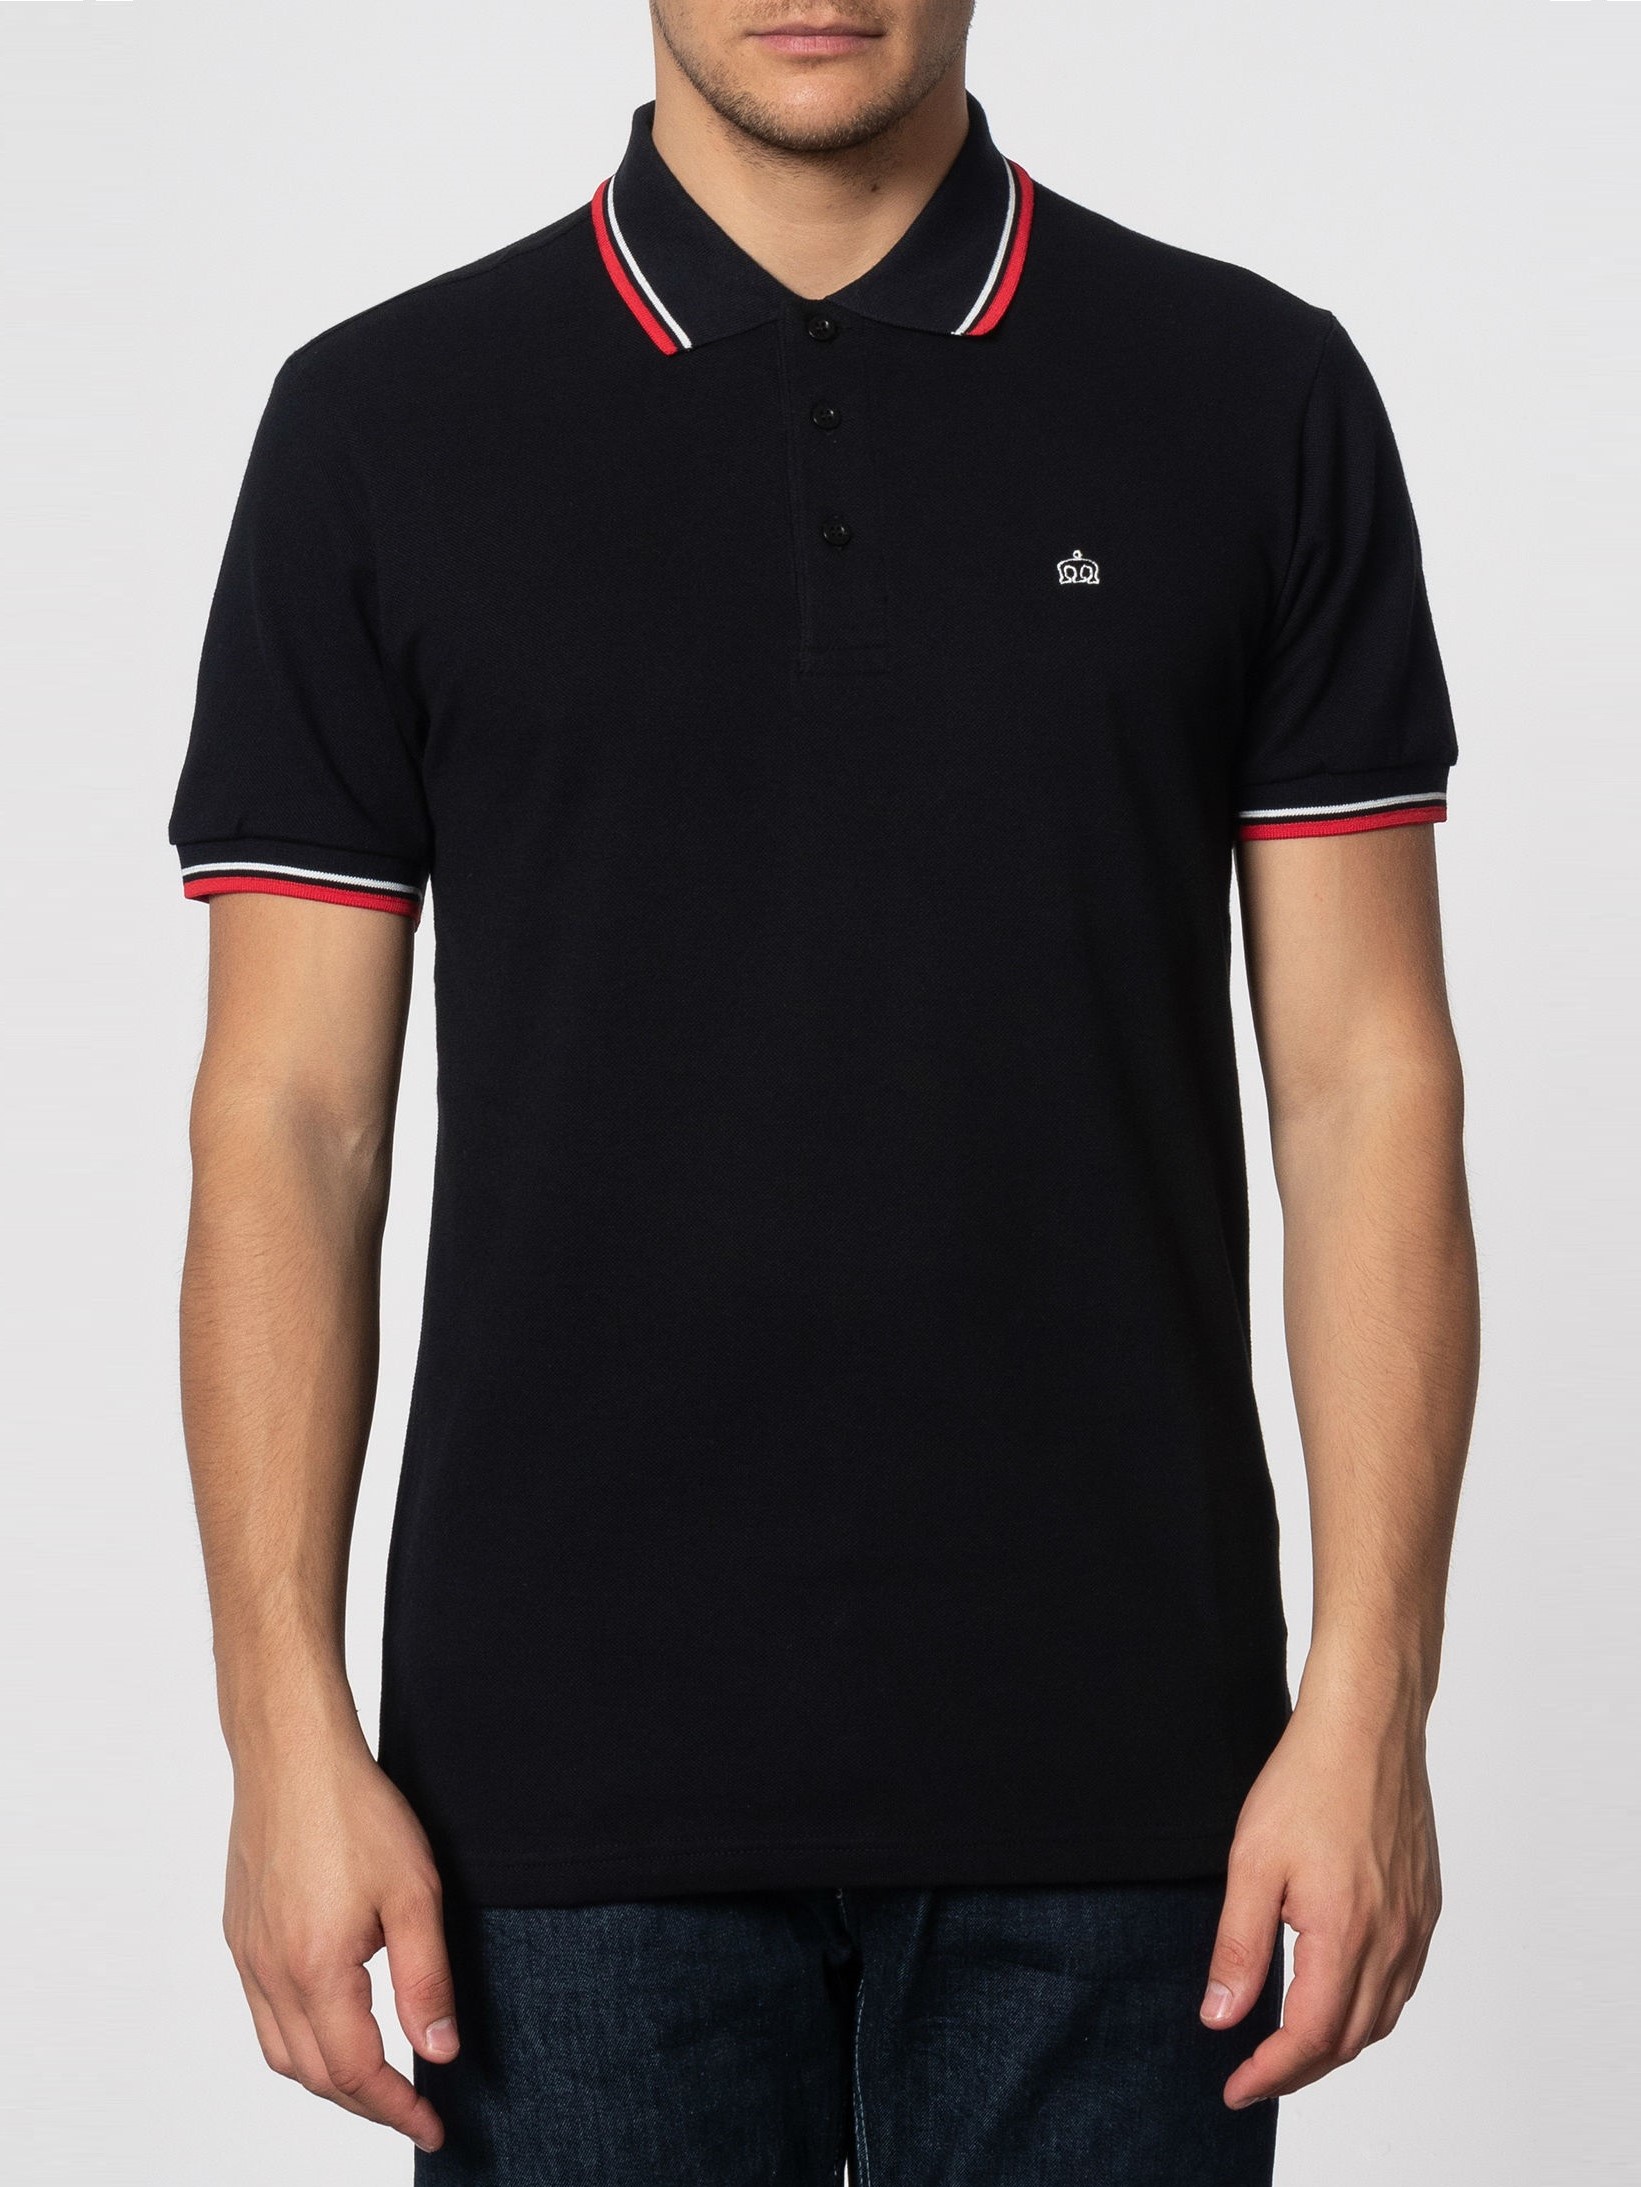 Мужская Рубашка Поло Card, хлопковая (пике), черная с красно-белой окантовкой (black) — купить в фирменном интернет магазине Merc